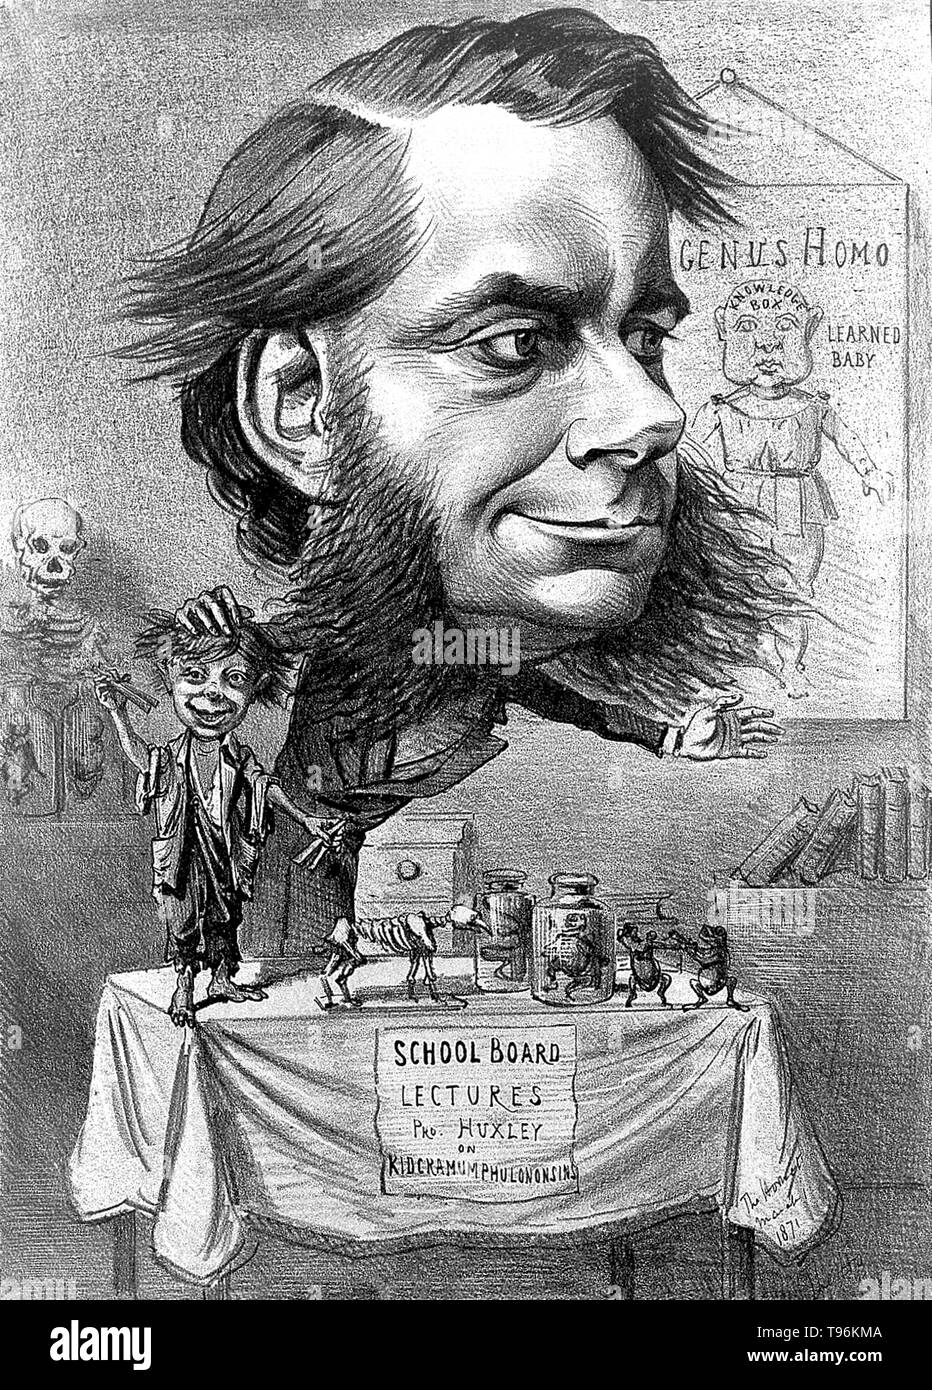 Thomas Henry Huxley (4 maggio 1825 - 29 giugno 1895) era un biologo inglese, noto come ''Darwin's Bulldog'' per la sua difesa di Charles Darwin la teoria dell'evoluzione. Huxley famoso 1860 Dibattito con Samuel Wilberforce era un momento chiave nella più ampia accettazione di evoluzione e nella sua propria carriera. Huxley era lento ad accettare alcuni di Darwin, idee, come gradualism, ed era indeciso circa la selezione naturale, ma nonostante questo egli è stata generosa nel suo sostegno pubblico di Darwin. Foto Stock